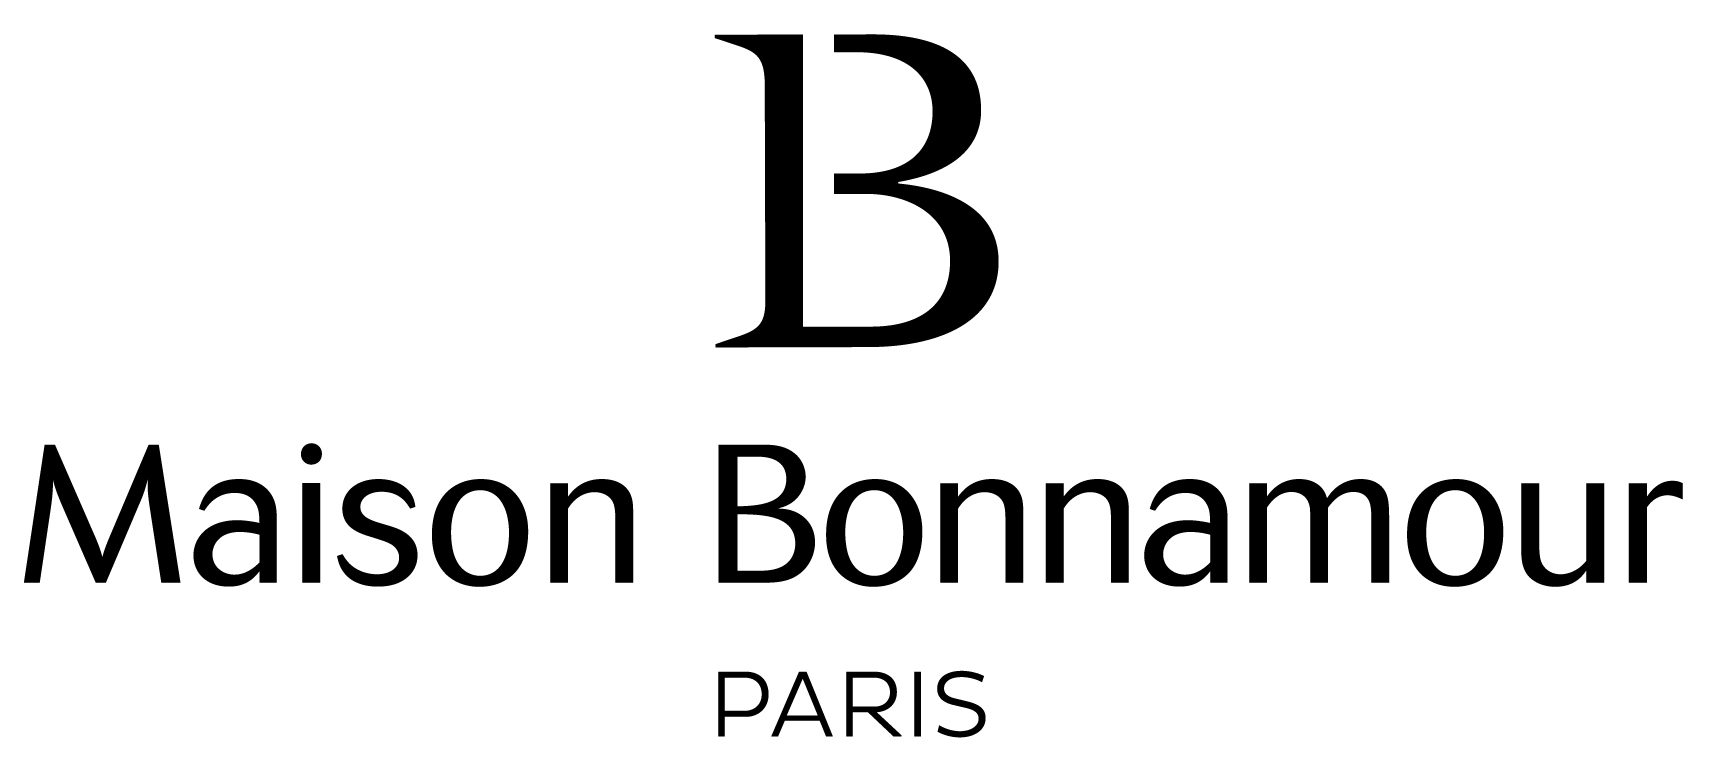 Maison Bonnamour : Sacs et accessoires - haute maroquinerie végane - made in France